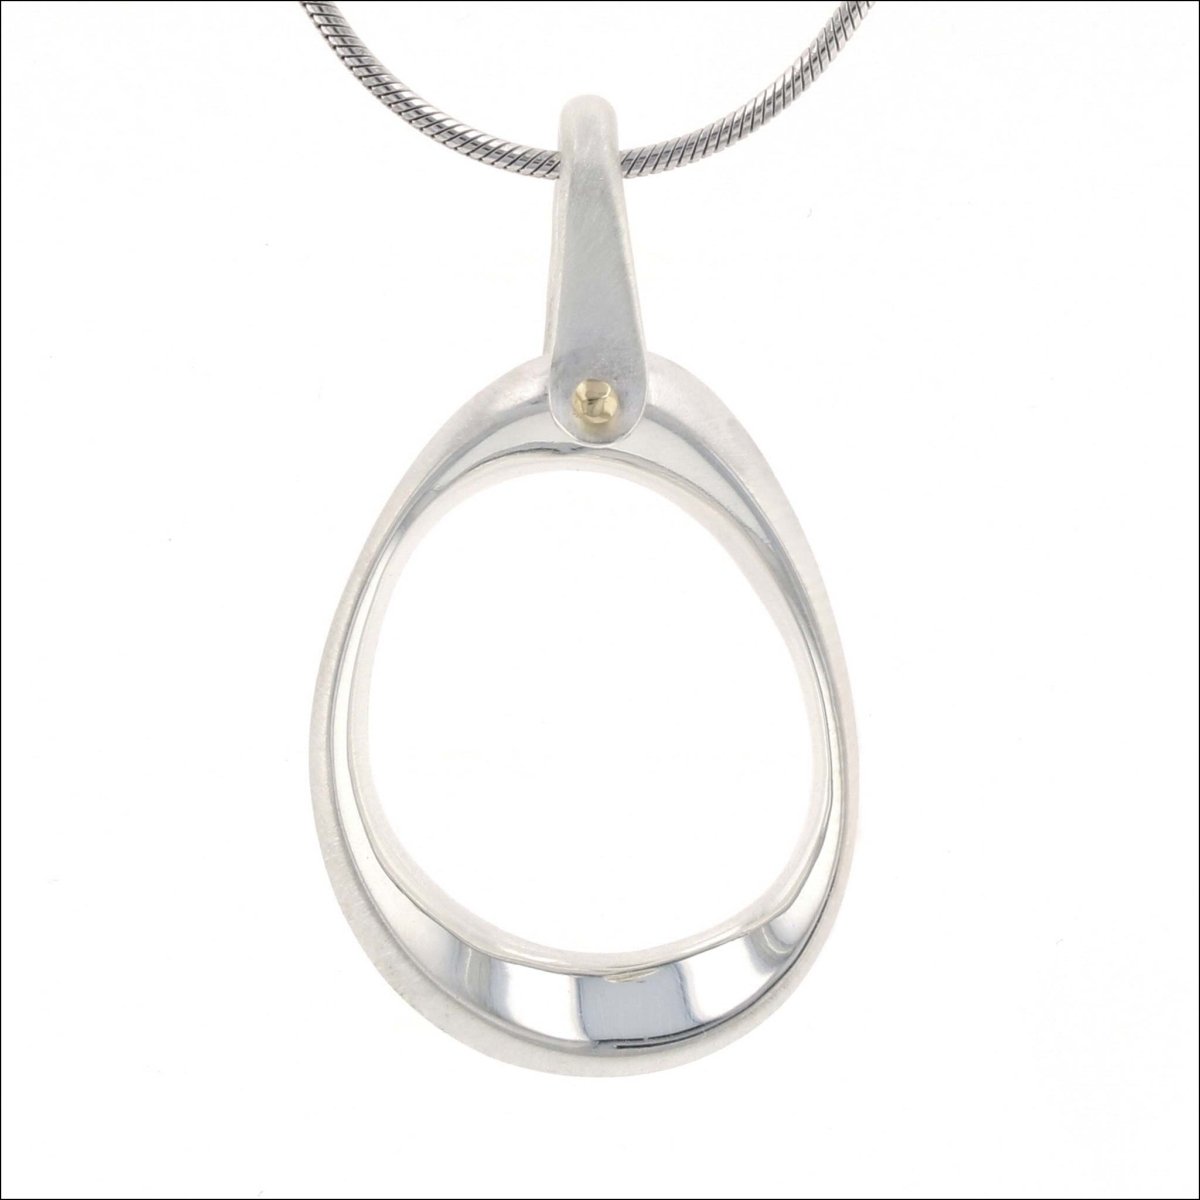 Oval "Shapes" Pendant Sterling Silver 18KY - JewelsmithPendants